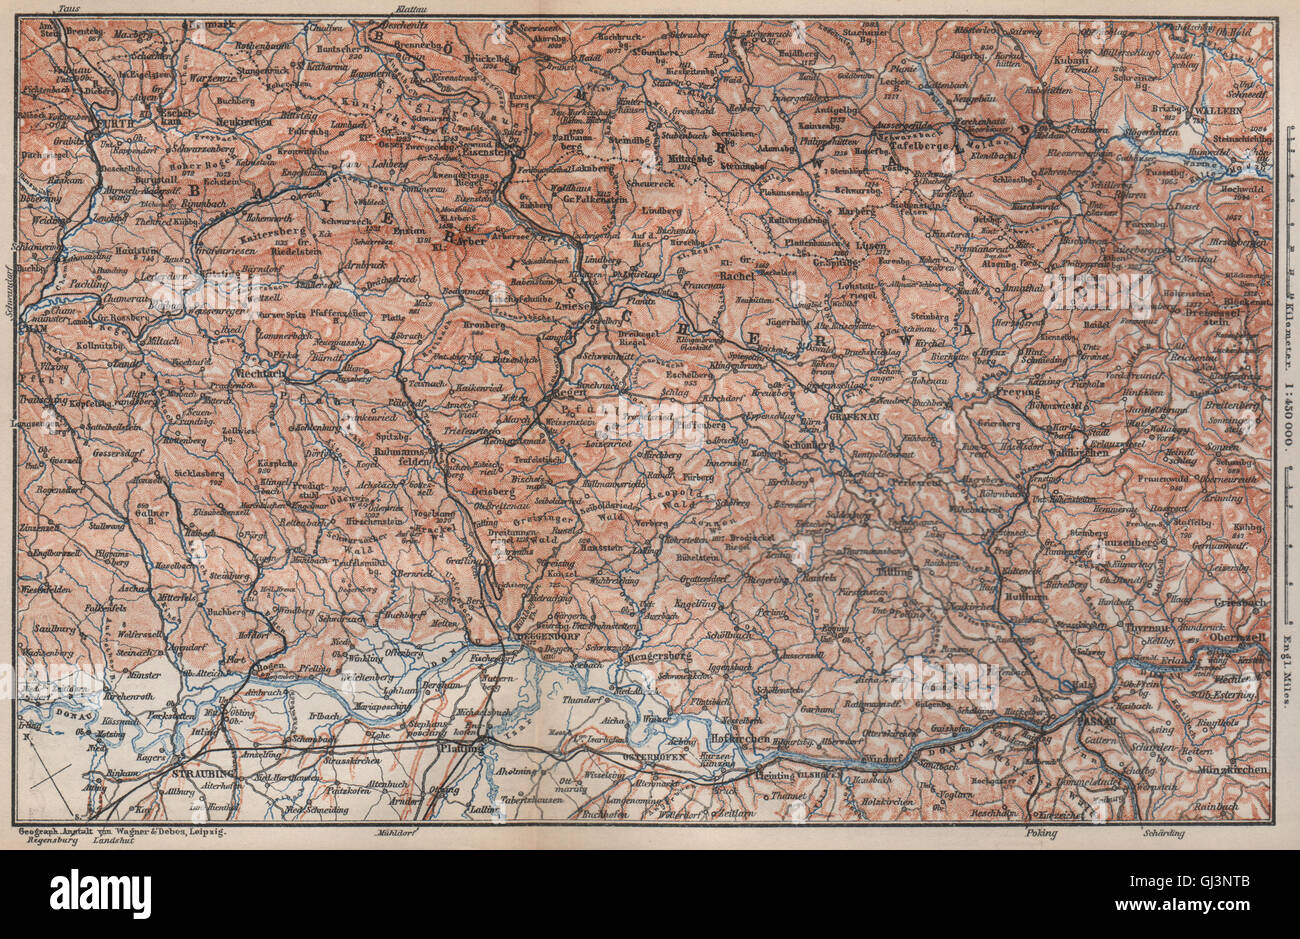 Bodenmais Zelezna Ruda 1914 map BAVARIAN/BOHEMIAN FOREST Bayrischer/Böhmerwald 